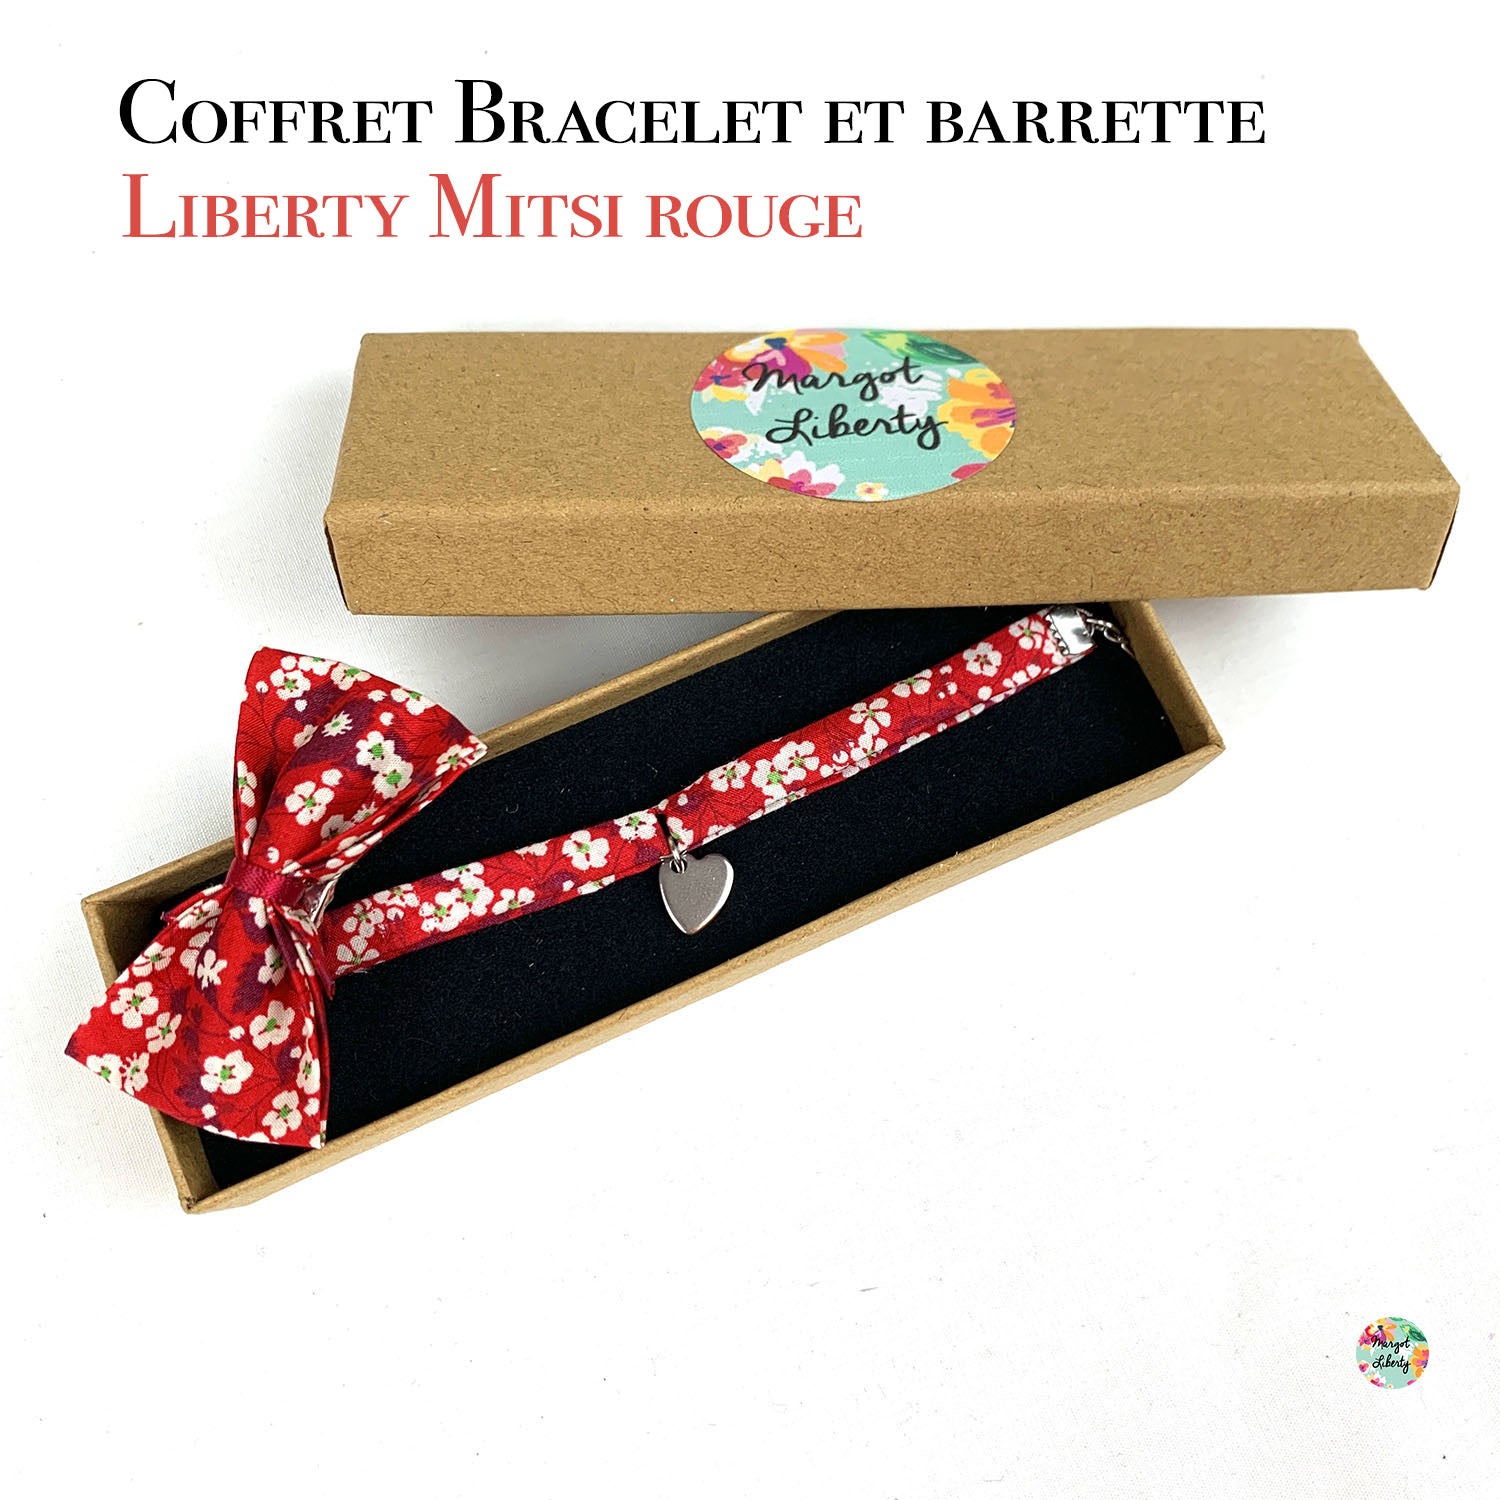 Coffret &quot;Bracelet et sa barrette&quot; Liberty Mitsi rouge